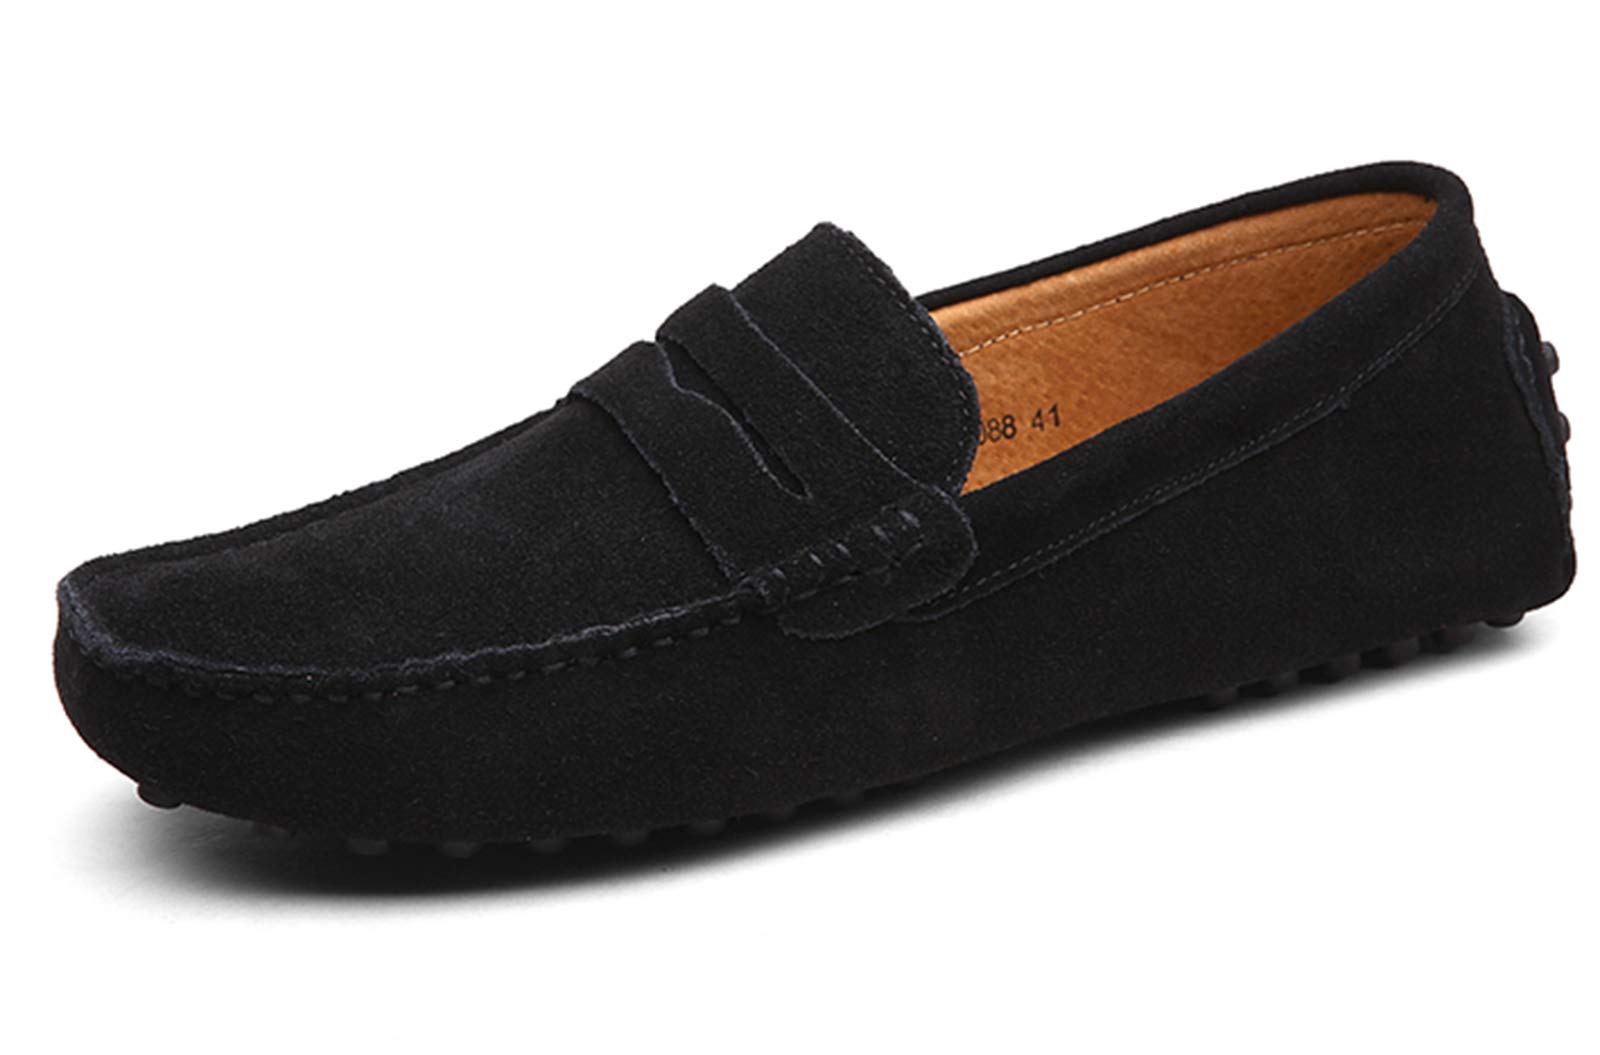 DUORO Herren Klassische Weiche Mokassin Echtes Leder Schuhe Loafers Wohnungen Fahren Halbschuhe (43,Schwarz)